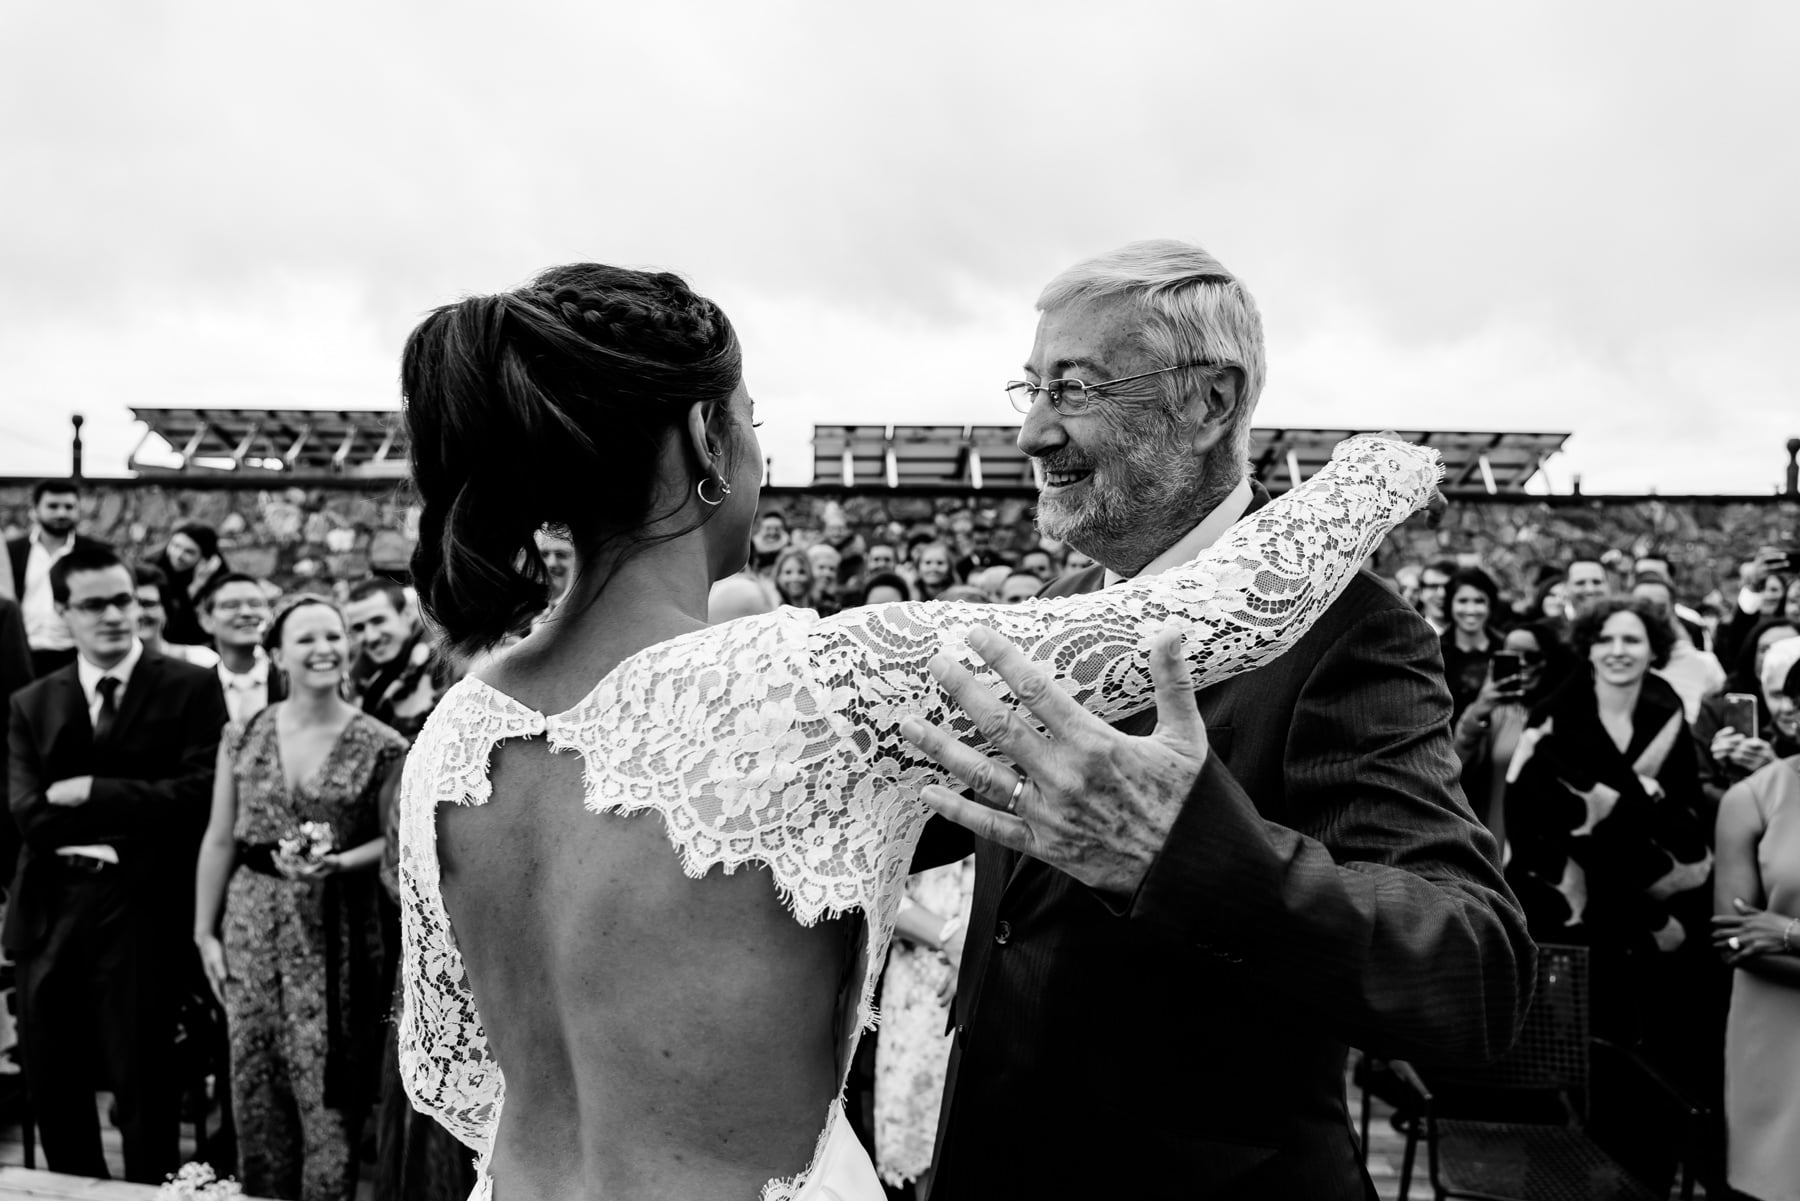 Complicité et émotion sont visibles lors de la cérémonie de mariage au Chetzeron